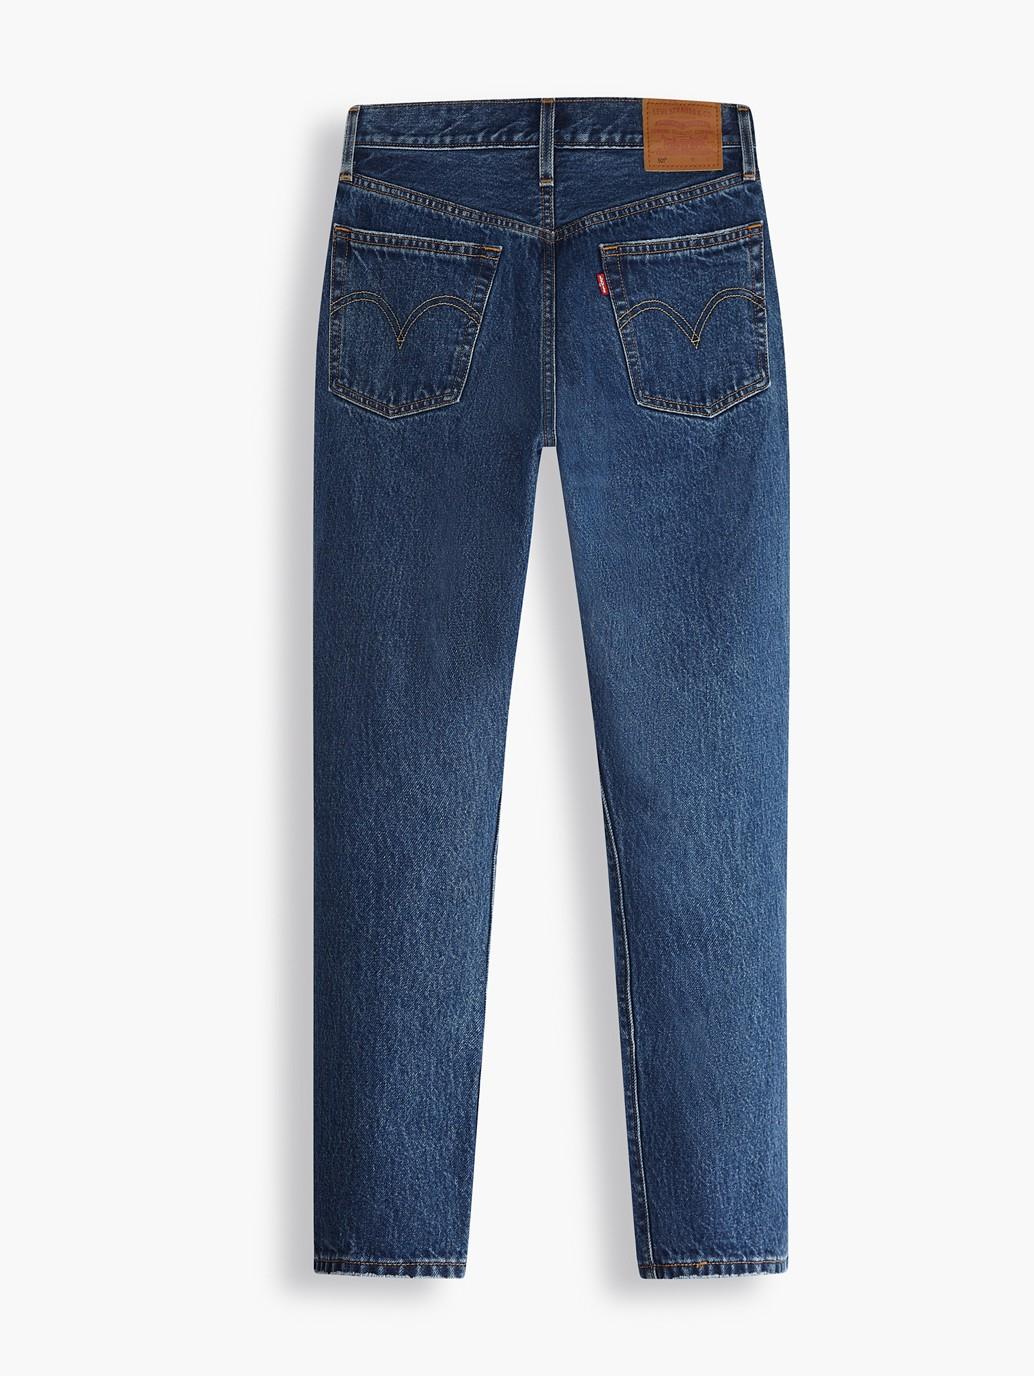 Buy Levi's® Women's 501® Original Cropped Jeans| Levi’s® Official ...